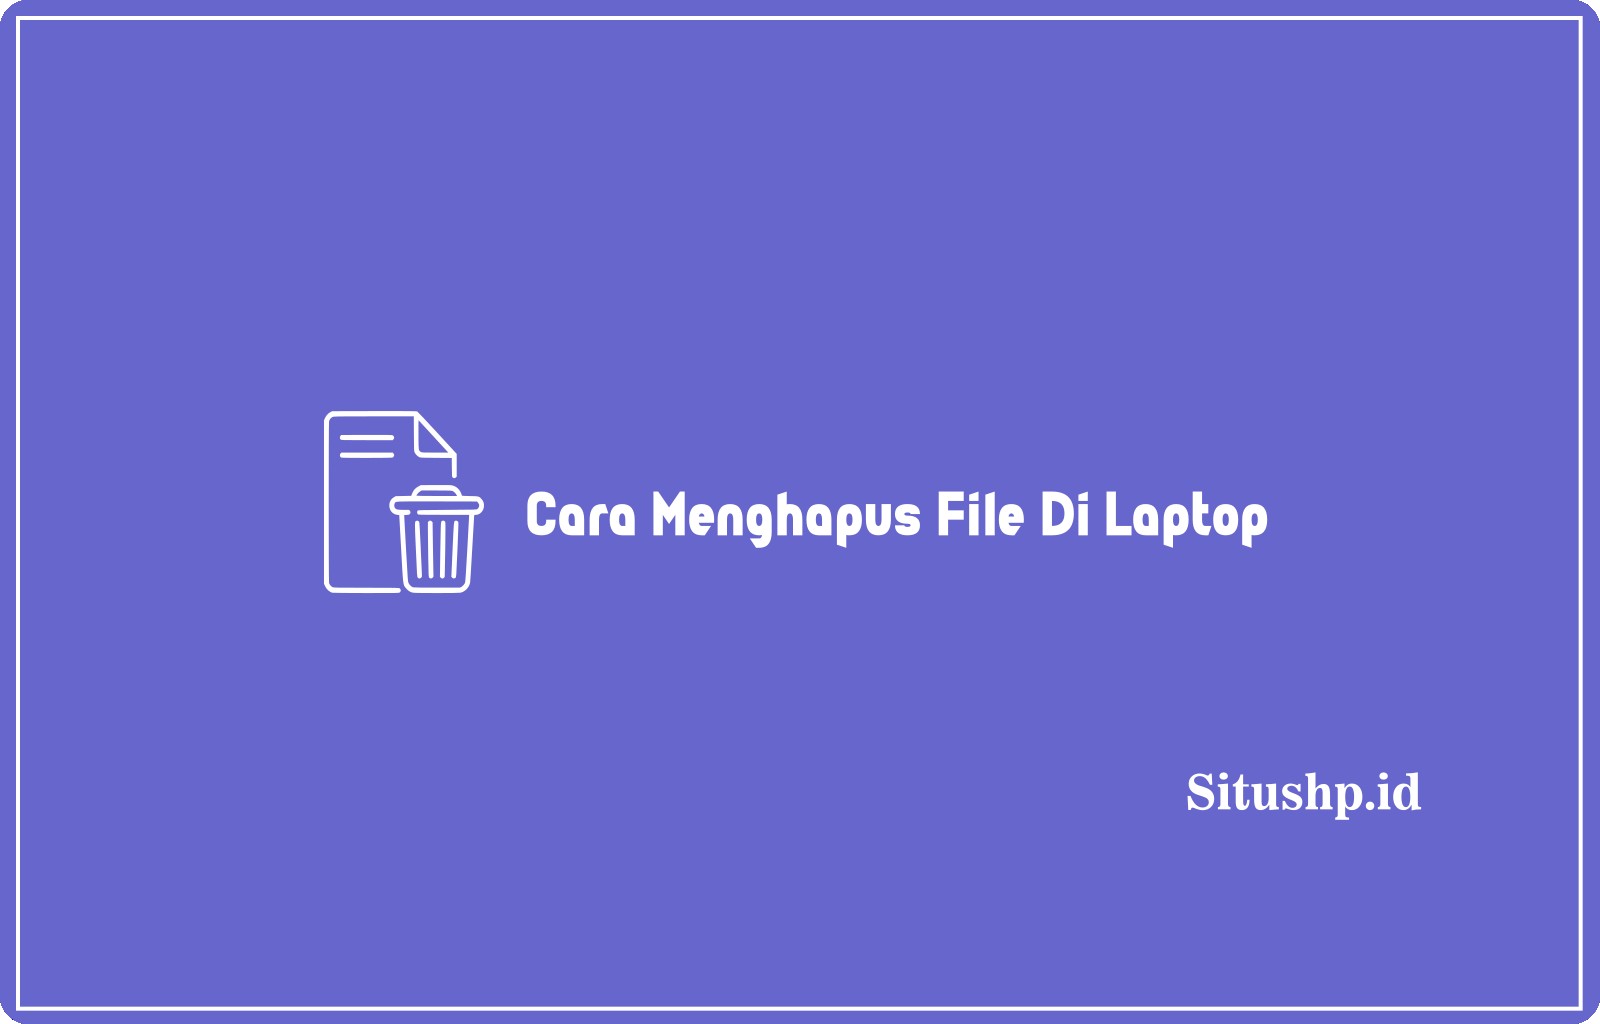 Cara Menghapus File Di Laptop